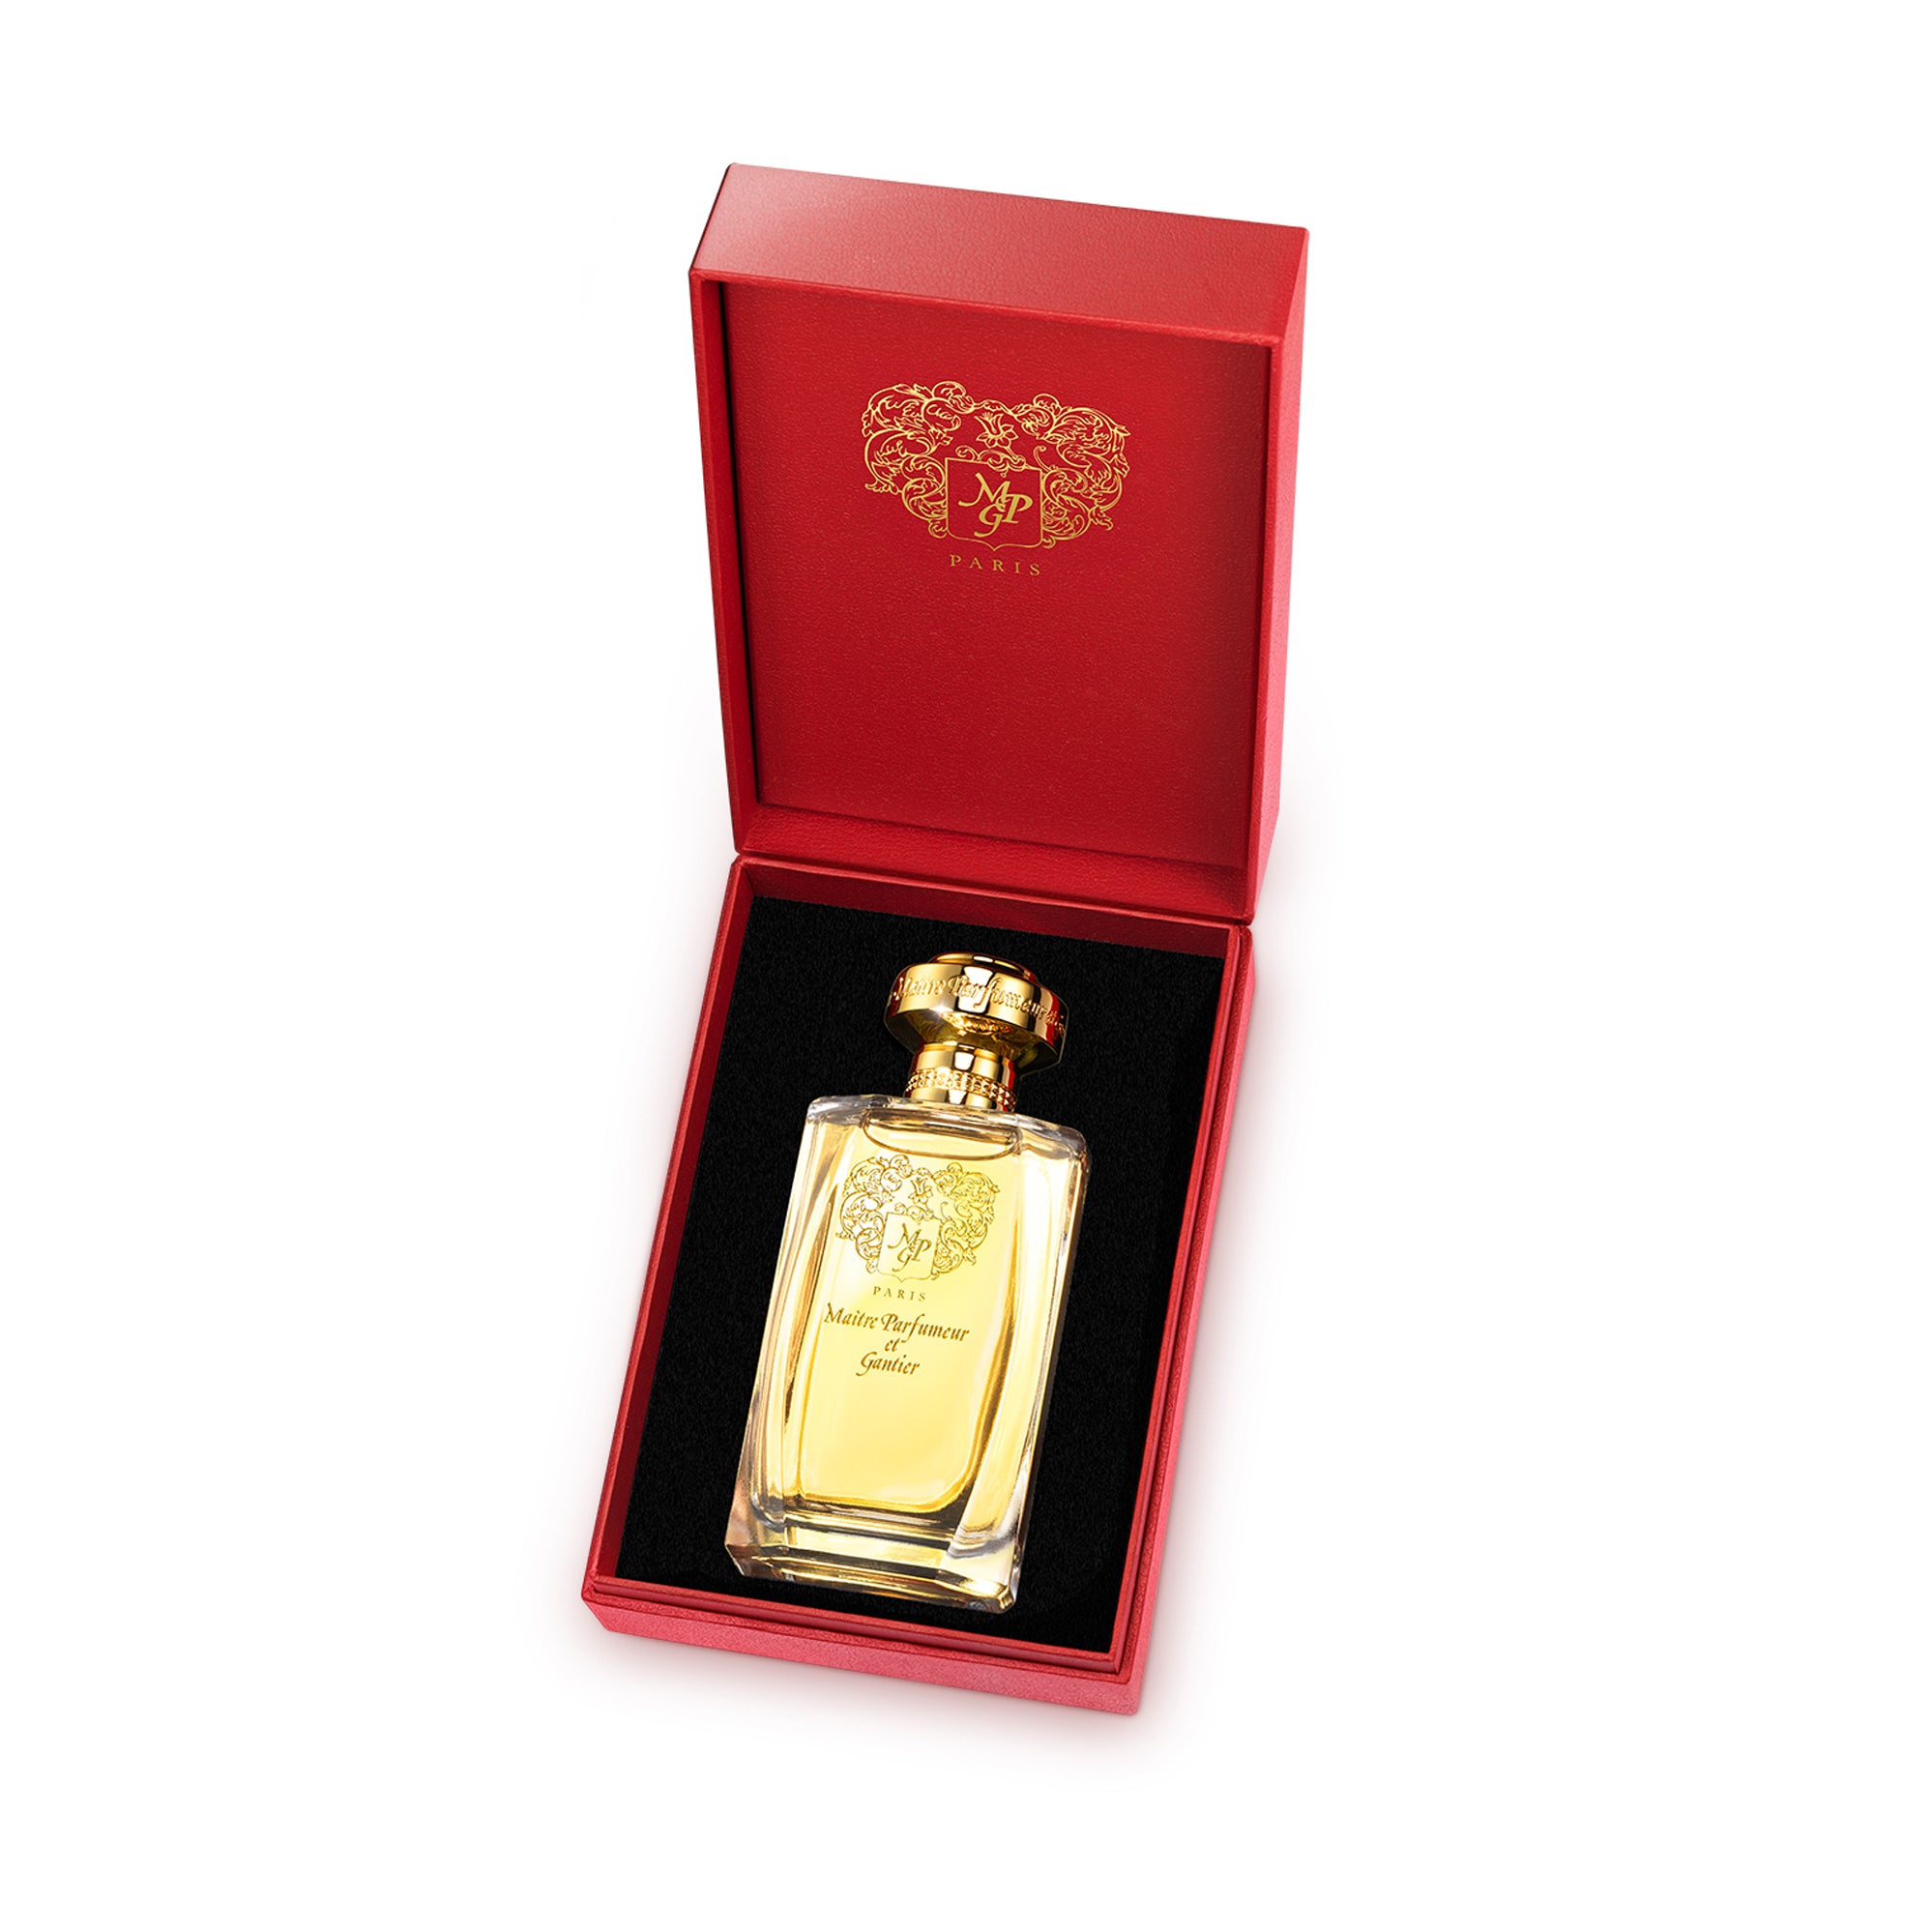 Ambre Mythique 120ml Eau de Parfum Bottle by MAÎTRE PARFUMEUR ET GANTIER in Presentation Box